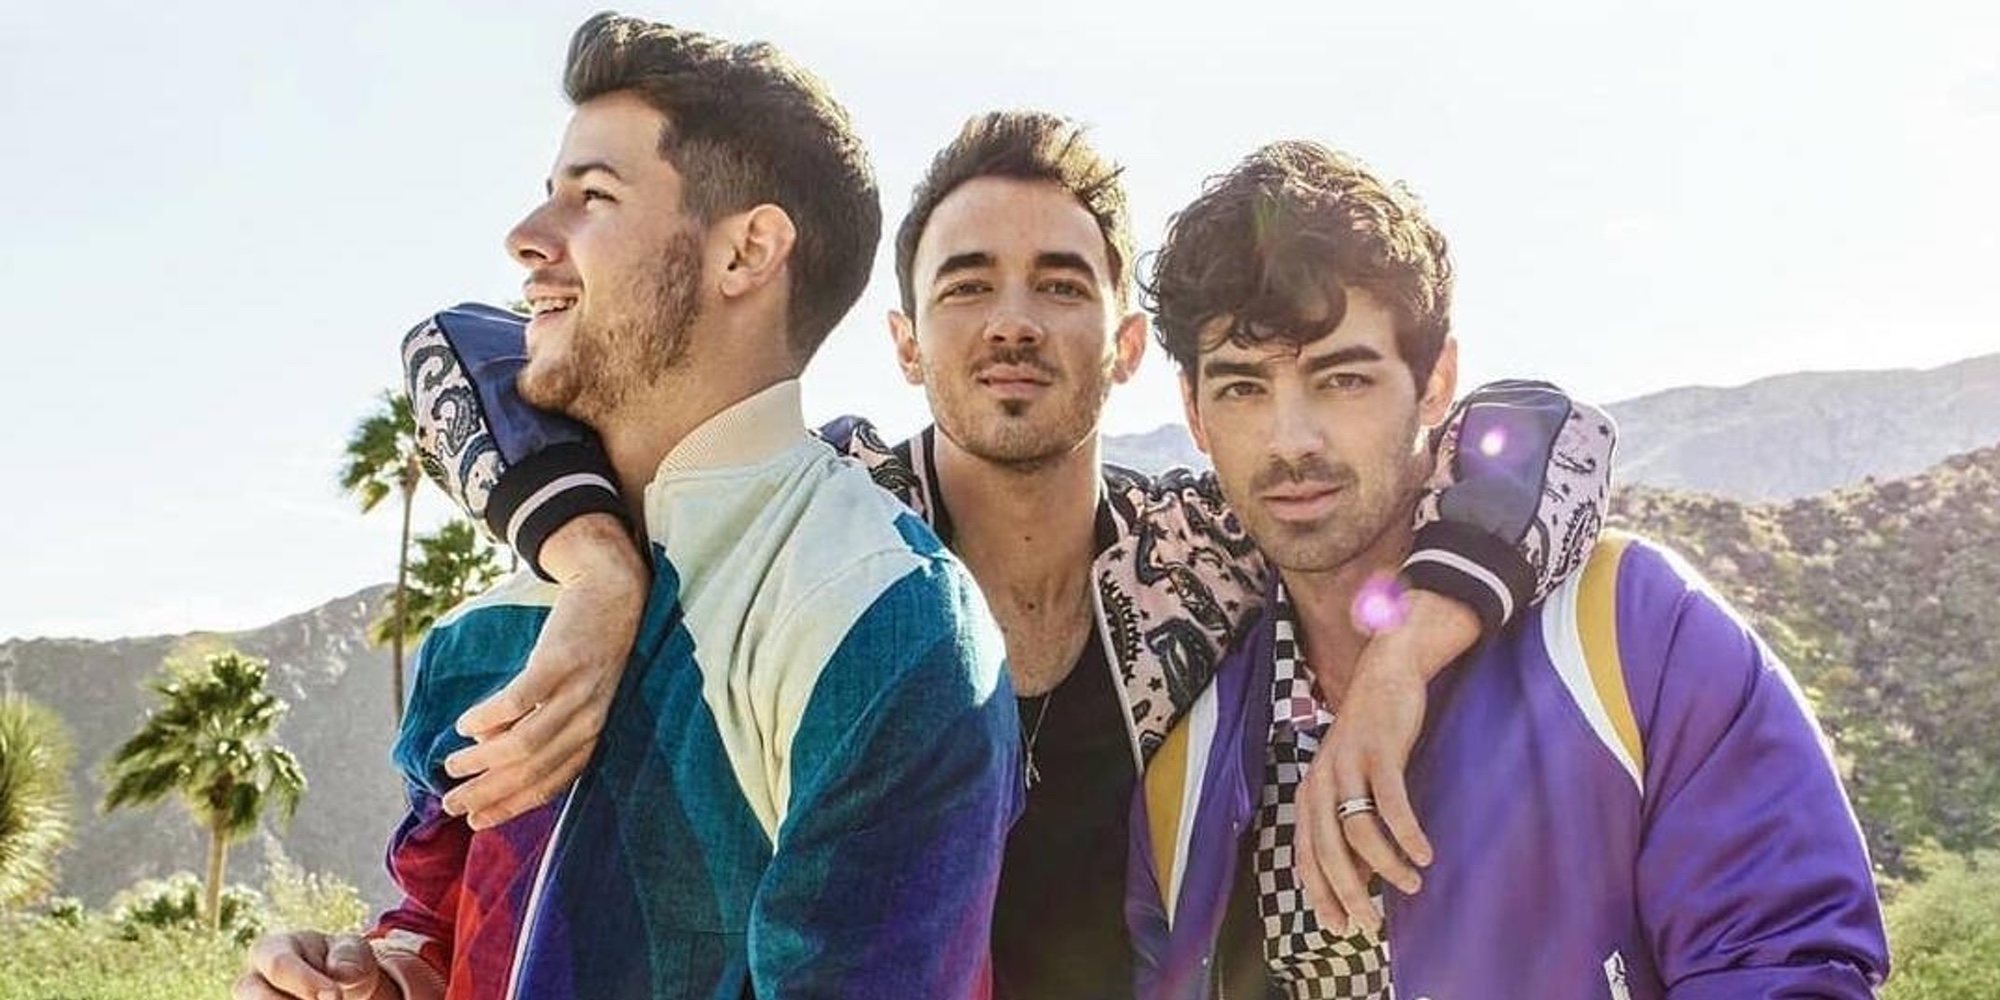 Así son las escenas eliminadas del videoclip de 'Sucker', el nuevo single de los Jonas Brothers